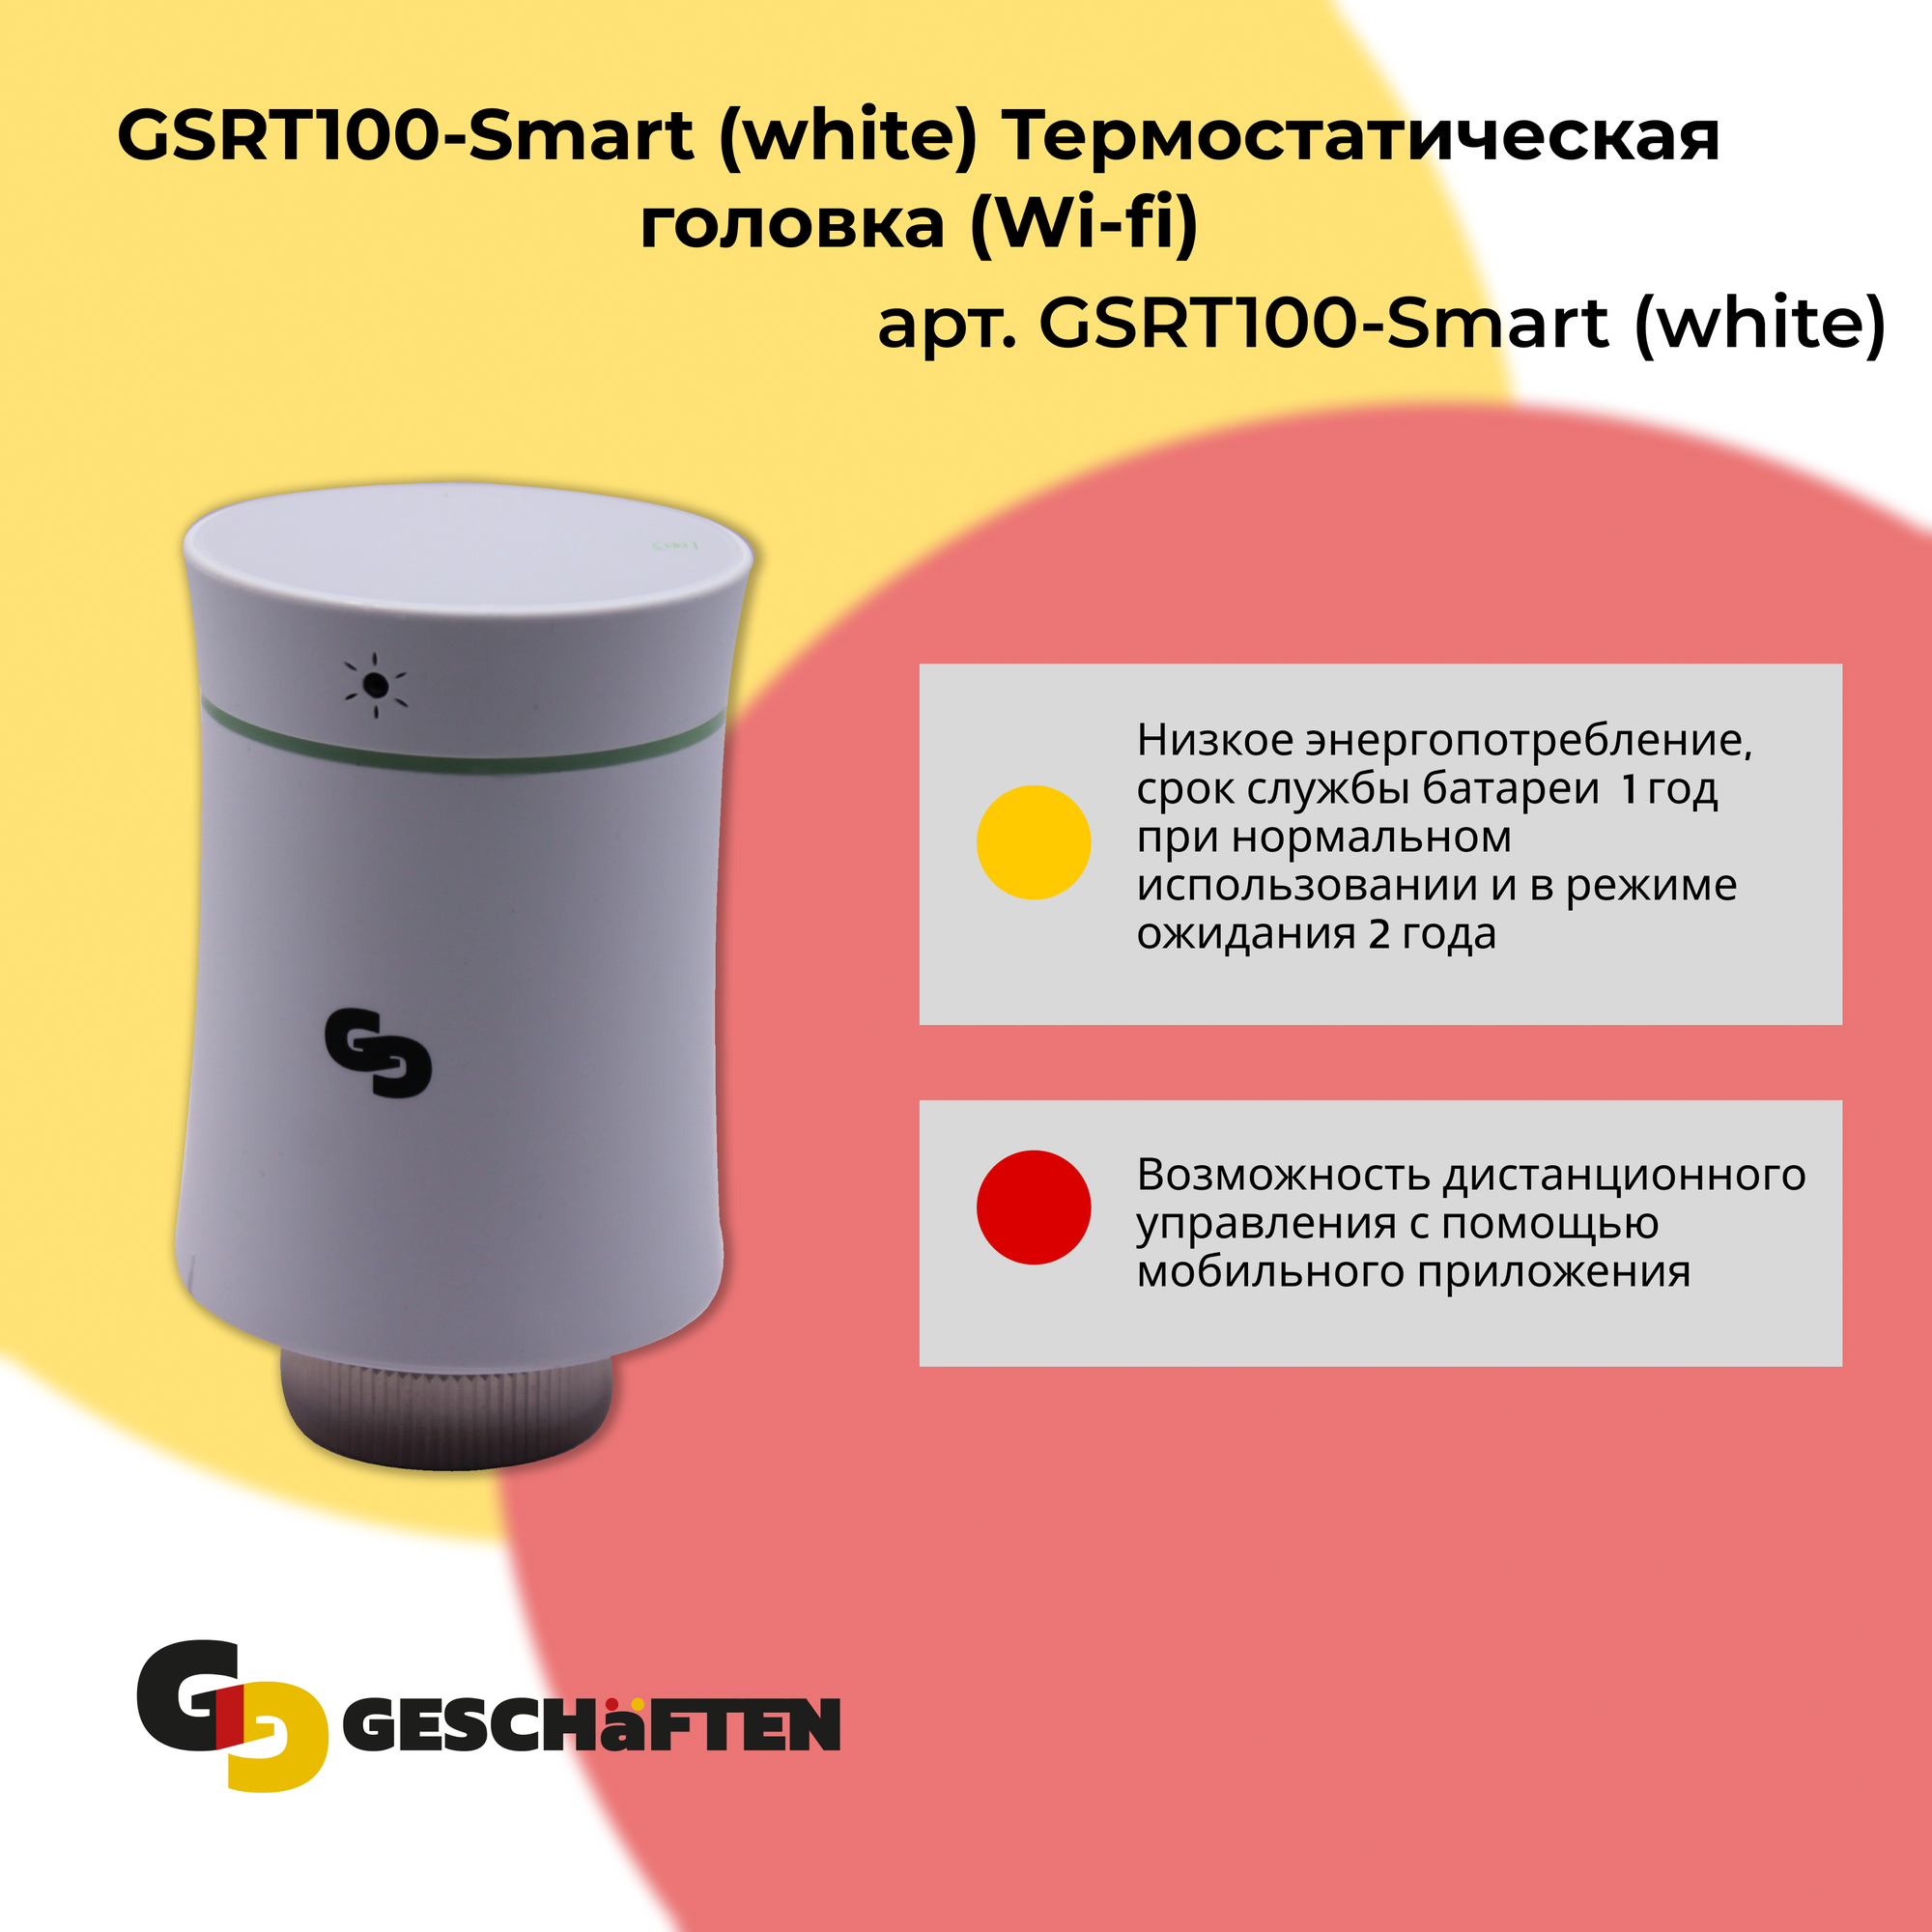 GSRT100-Smart (white) Термостатическая головка (Wi-fi)